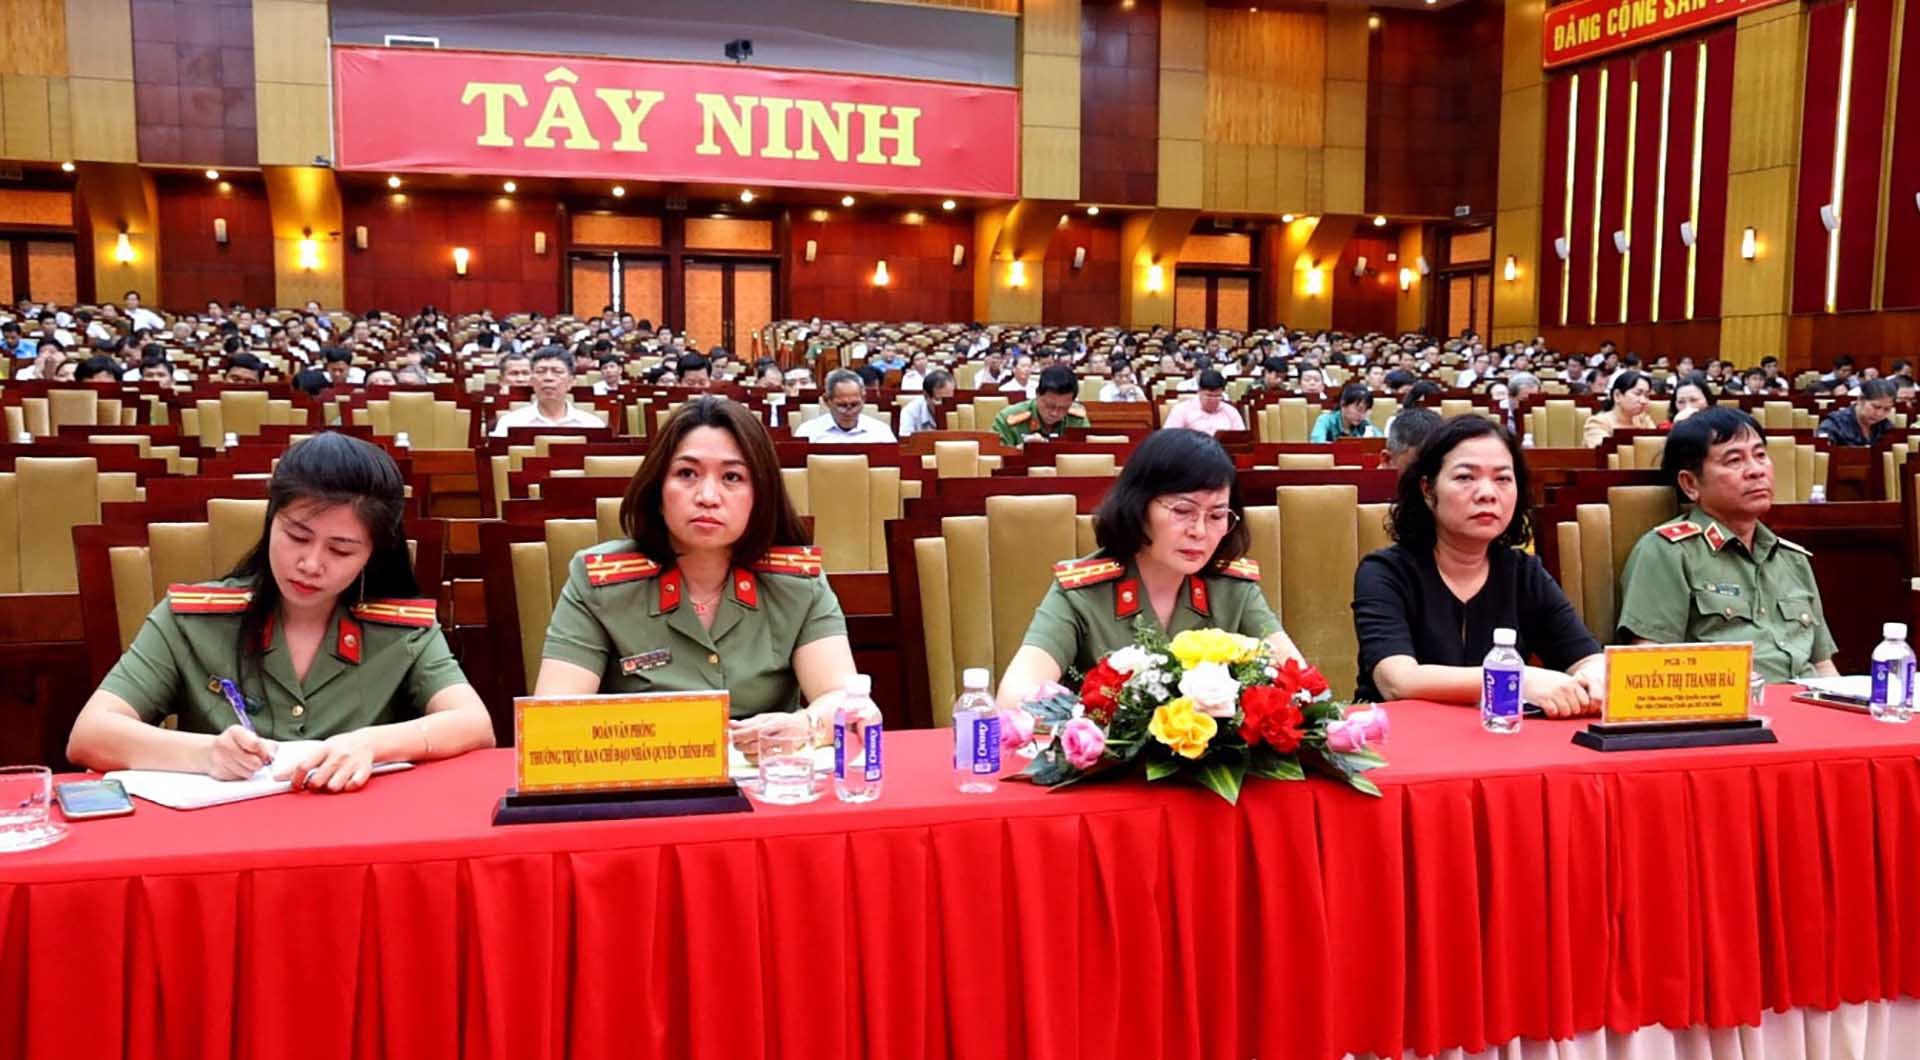 Hội nghị tập huấn công tác nhân quyền tỉnh Tây Ninh năm 2024